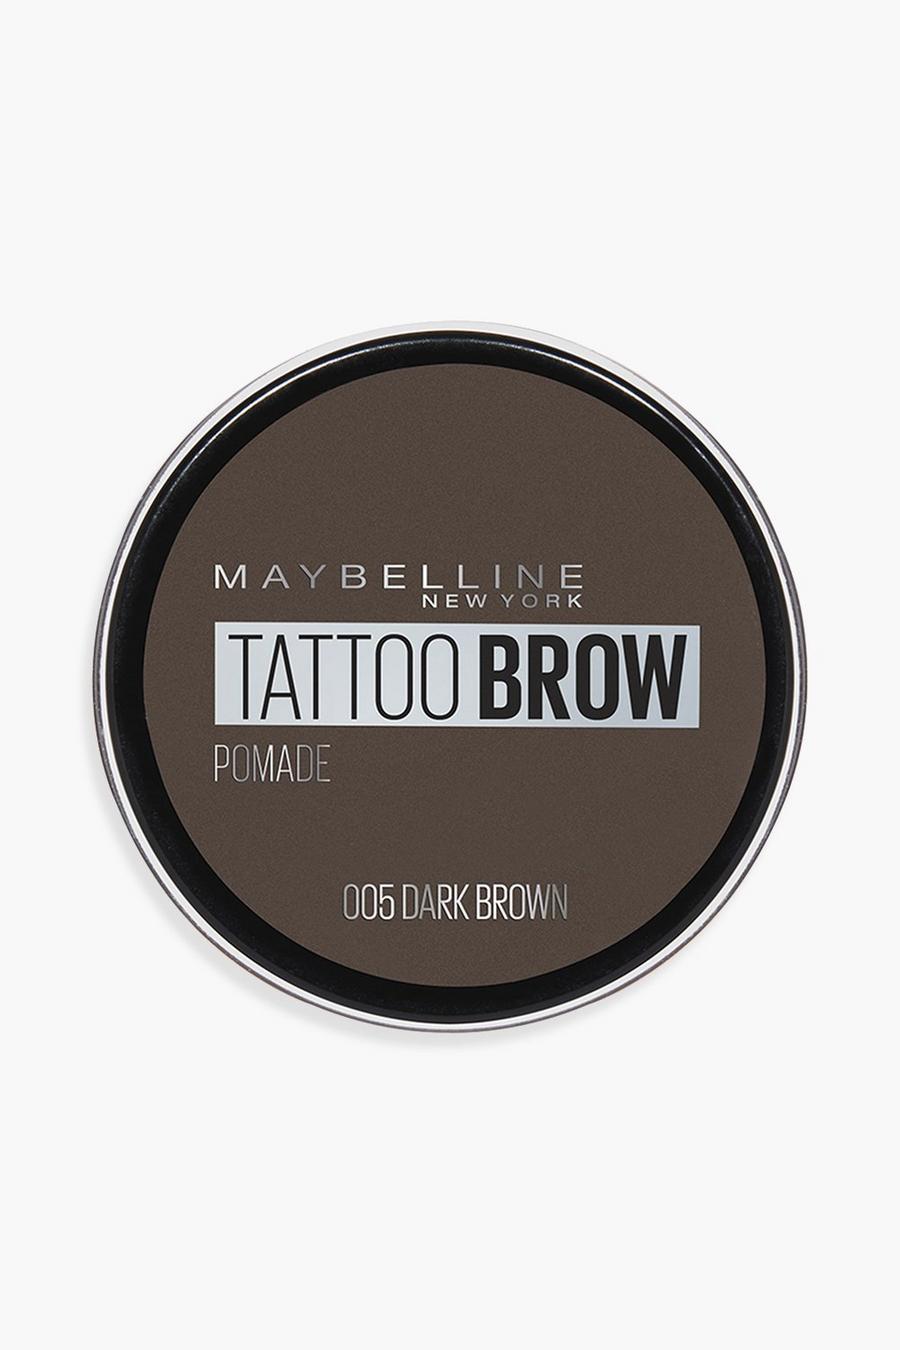 Maybelline Tattoo Brow Augenbrauen-Pomade, 05 dark brown